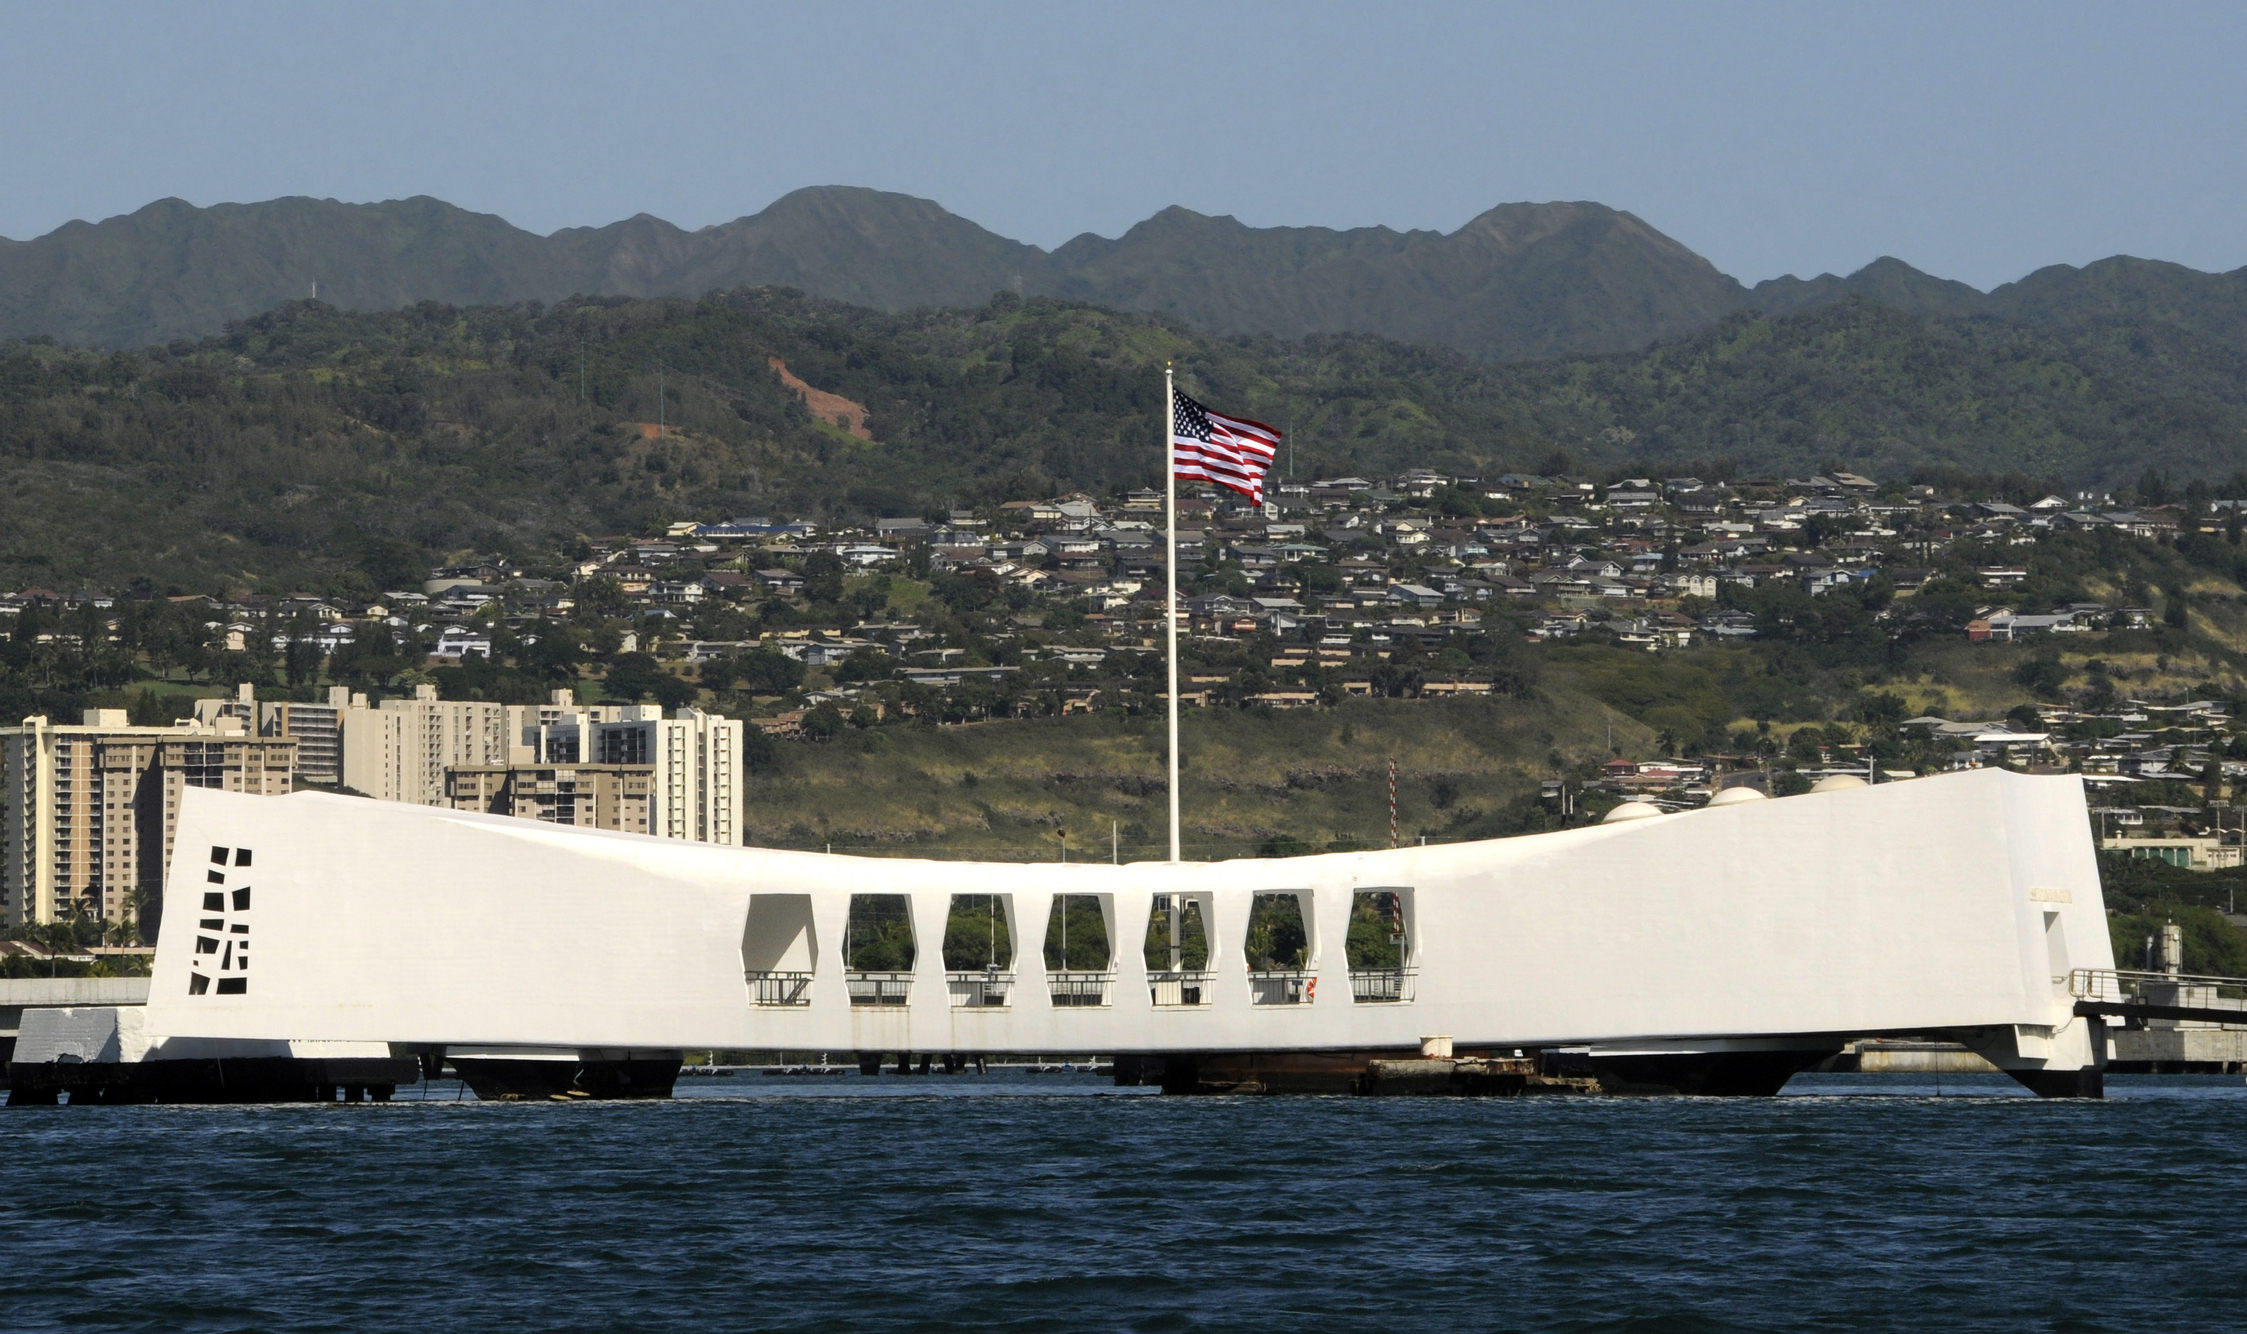 The Ensign flies over the USS Arizona Memorial in Honolulu, Hawaii